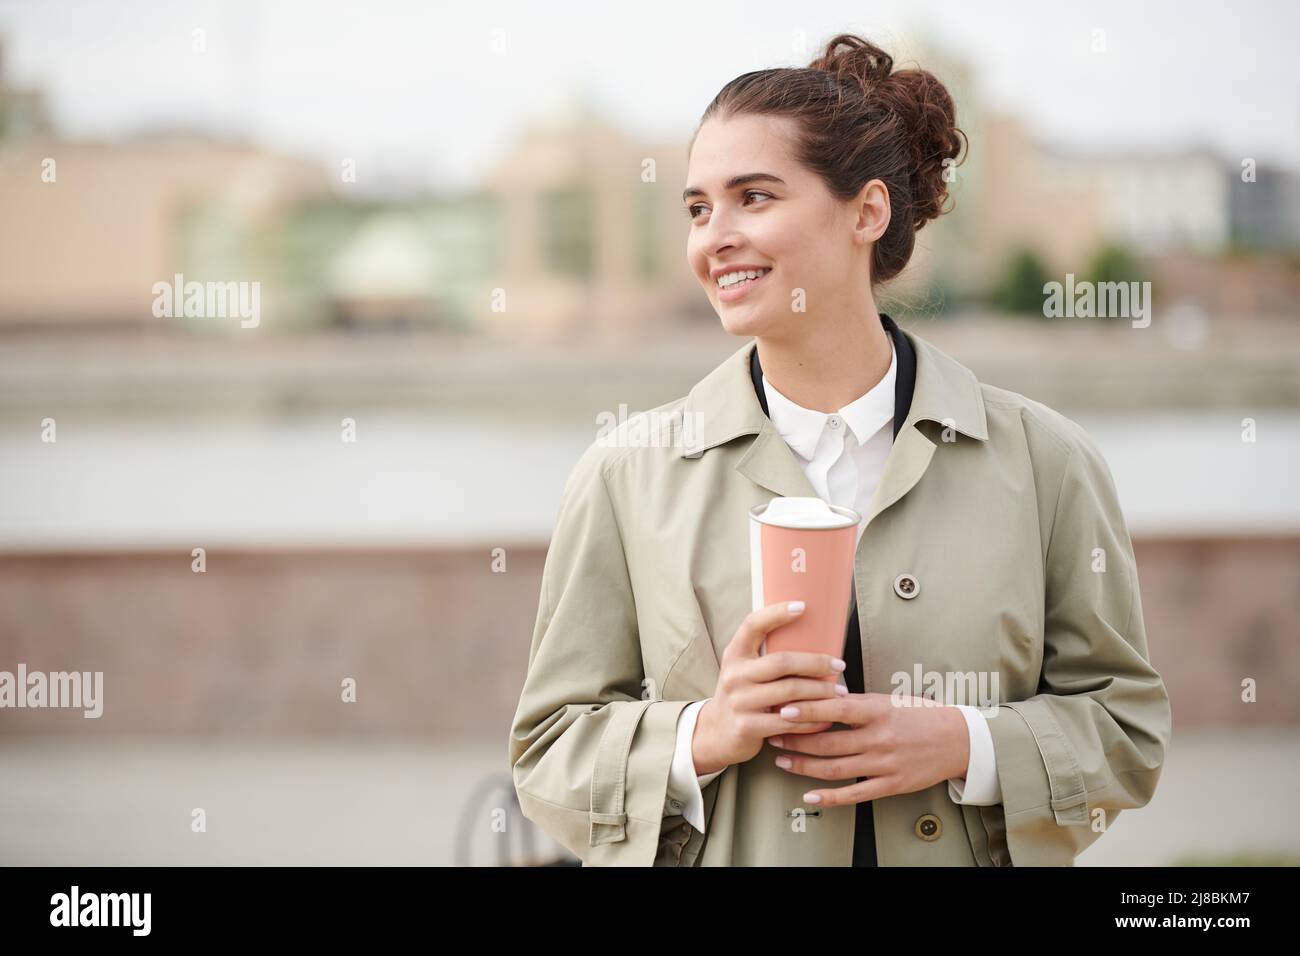 Lächelnde, unbeschwerte junge Geschäftsfrau in stilvollem Mantel, die während eines Spaziergangs durch die Stadt Kaffee trinkt Stockfoto